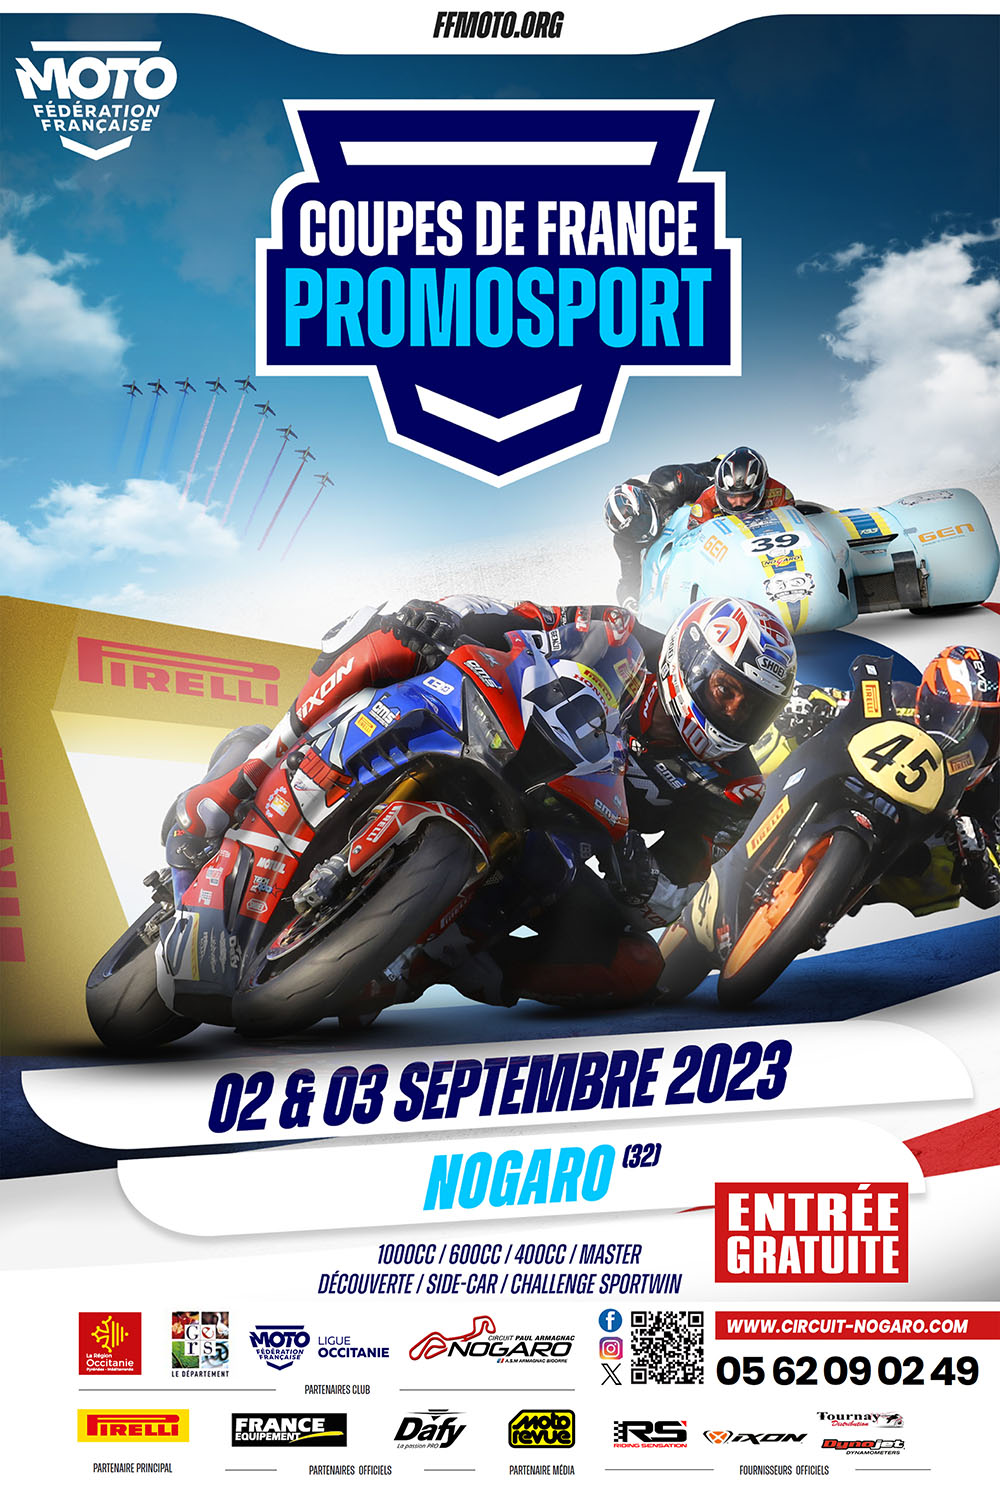 Affiche Promosport Nogaro 2023